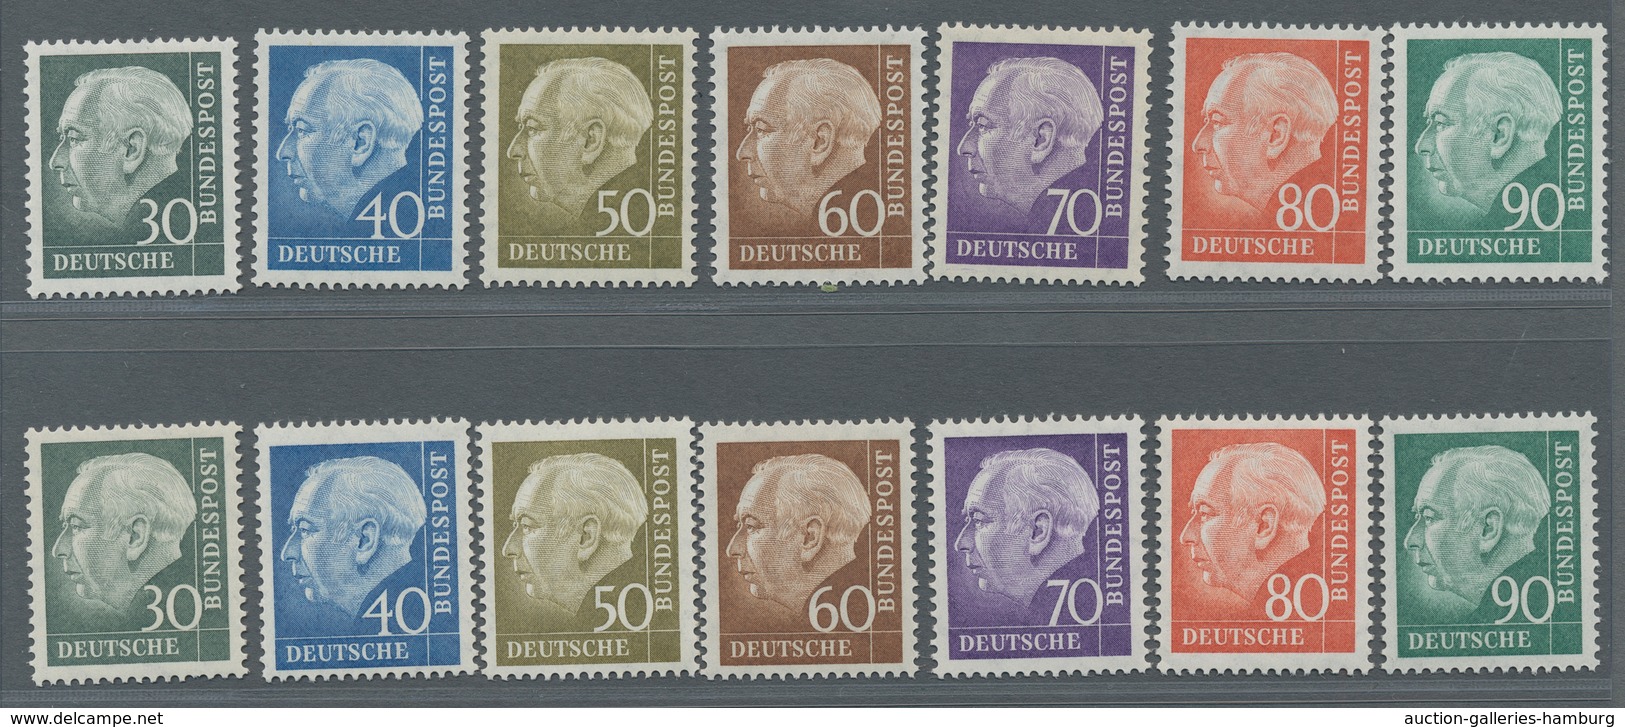 Bundesrepublik Deutschland: 1956, Heuss II, 11 kpl. postfrische Sätze, zusätzlich noch 9 mal Höchstw